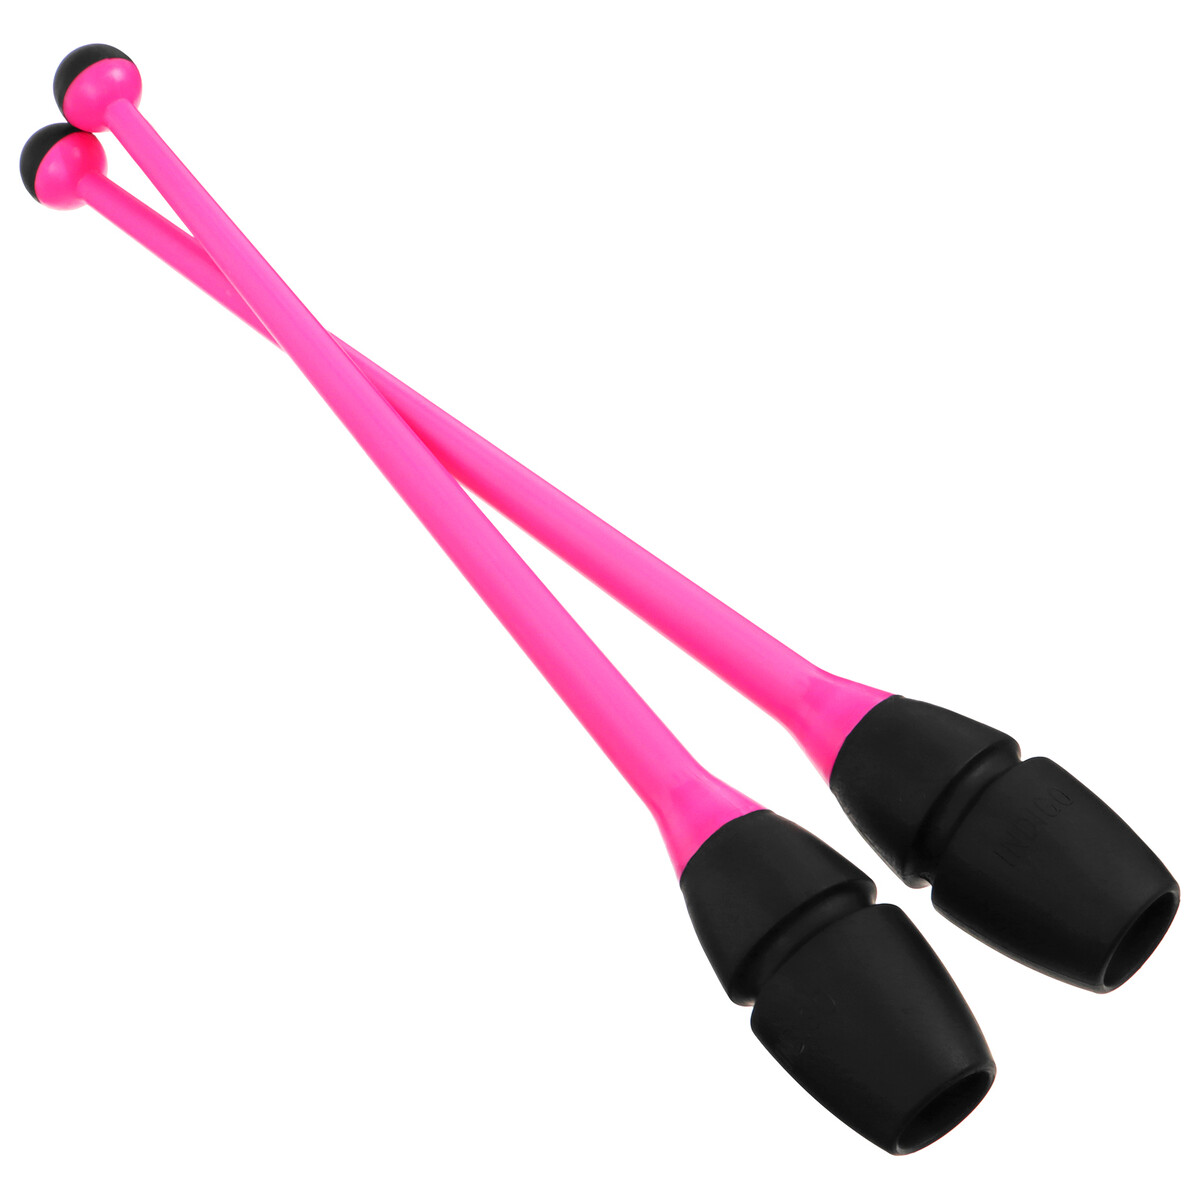 Булавы для художественной гимнастики вставляющиеся indigo, 41 см, цвет розовый/черный булавы для художественной гимнастики indigo 41 см